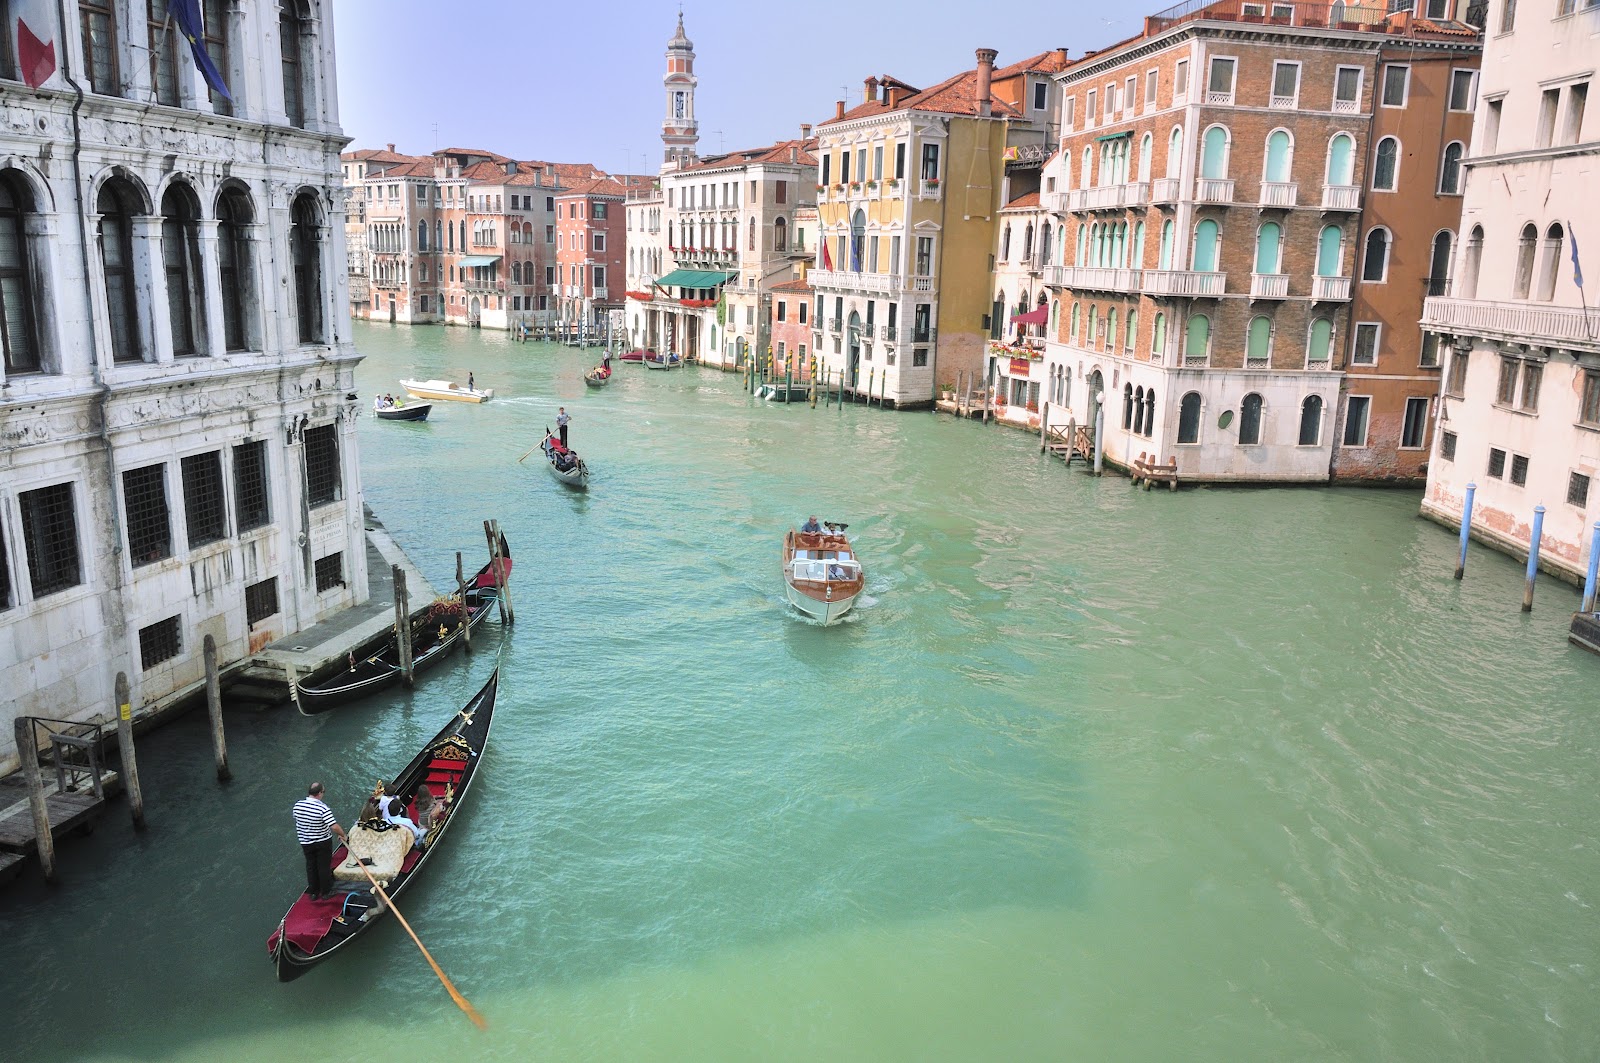 File:Hotel Ca Sagredo - Grand Canal - Rialto - Venice Italy Venezia -  Creative Commons by gnuckx (4965549251).jpg - Wikimedia Commons